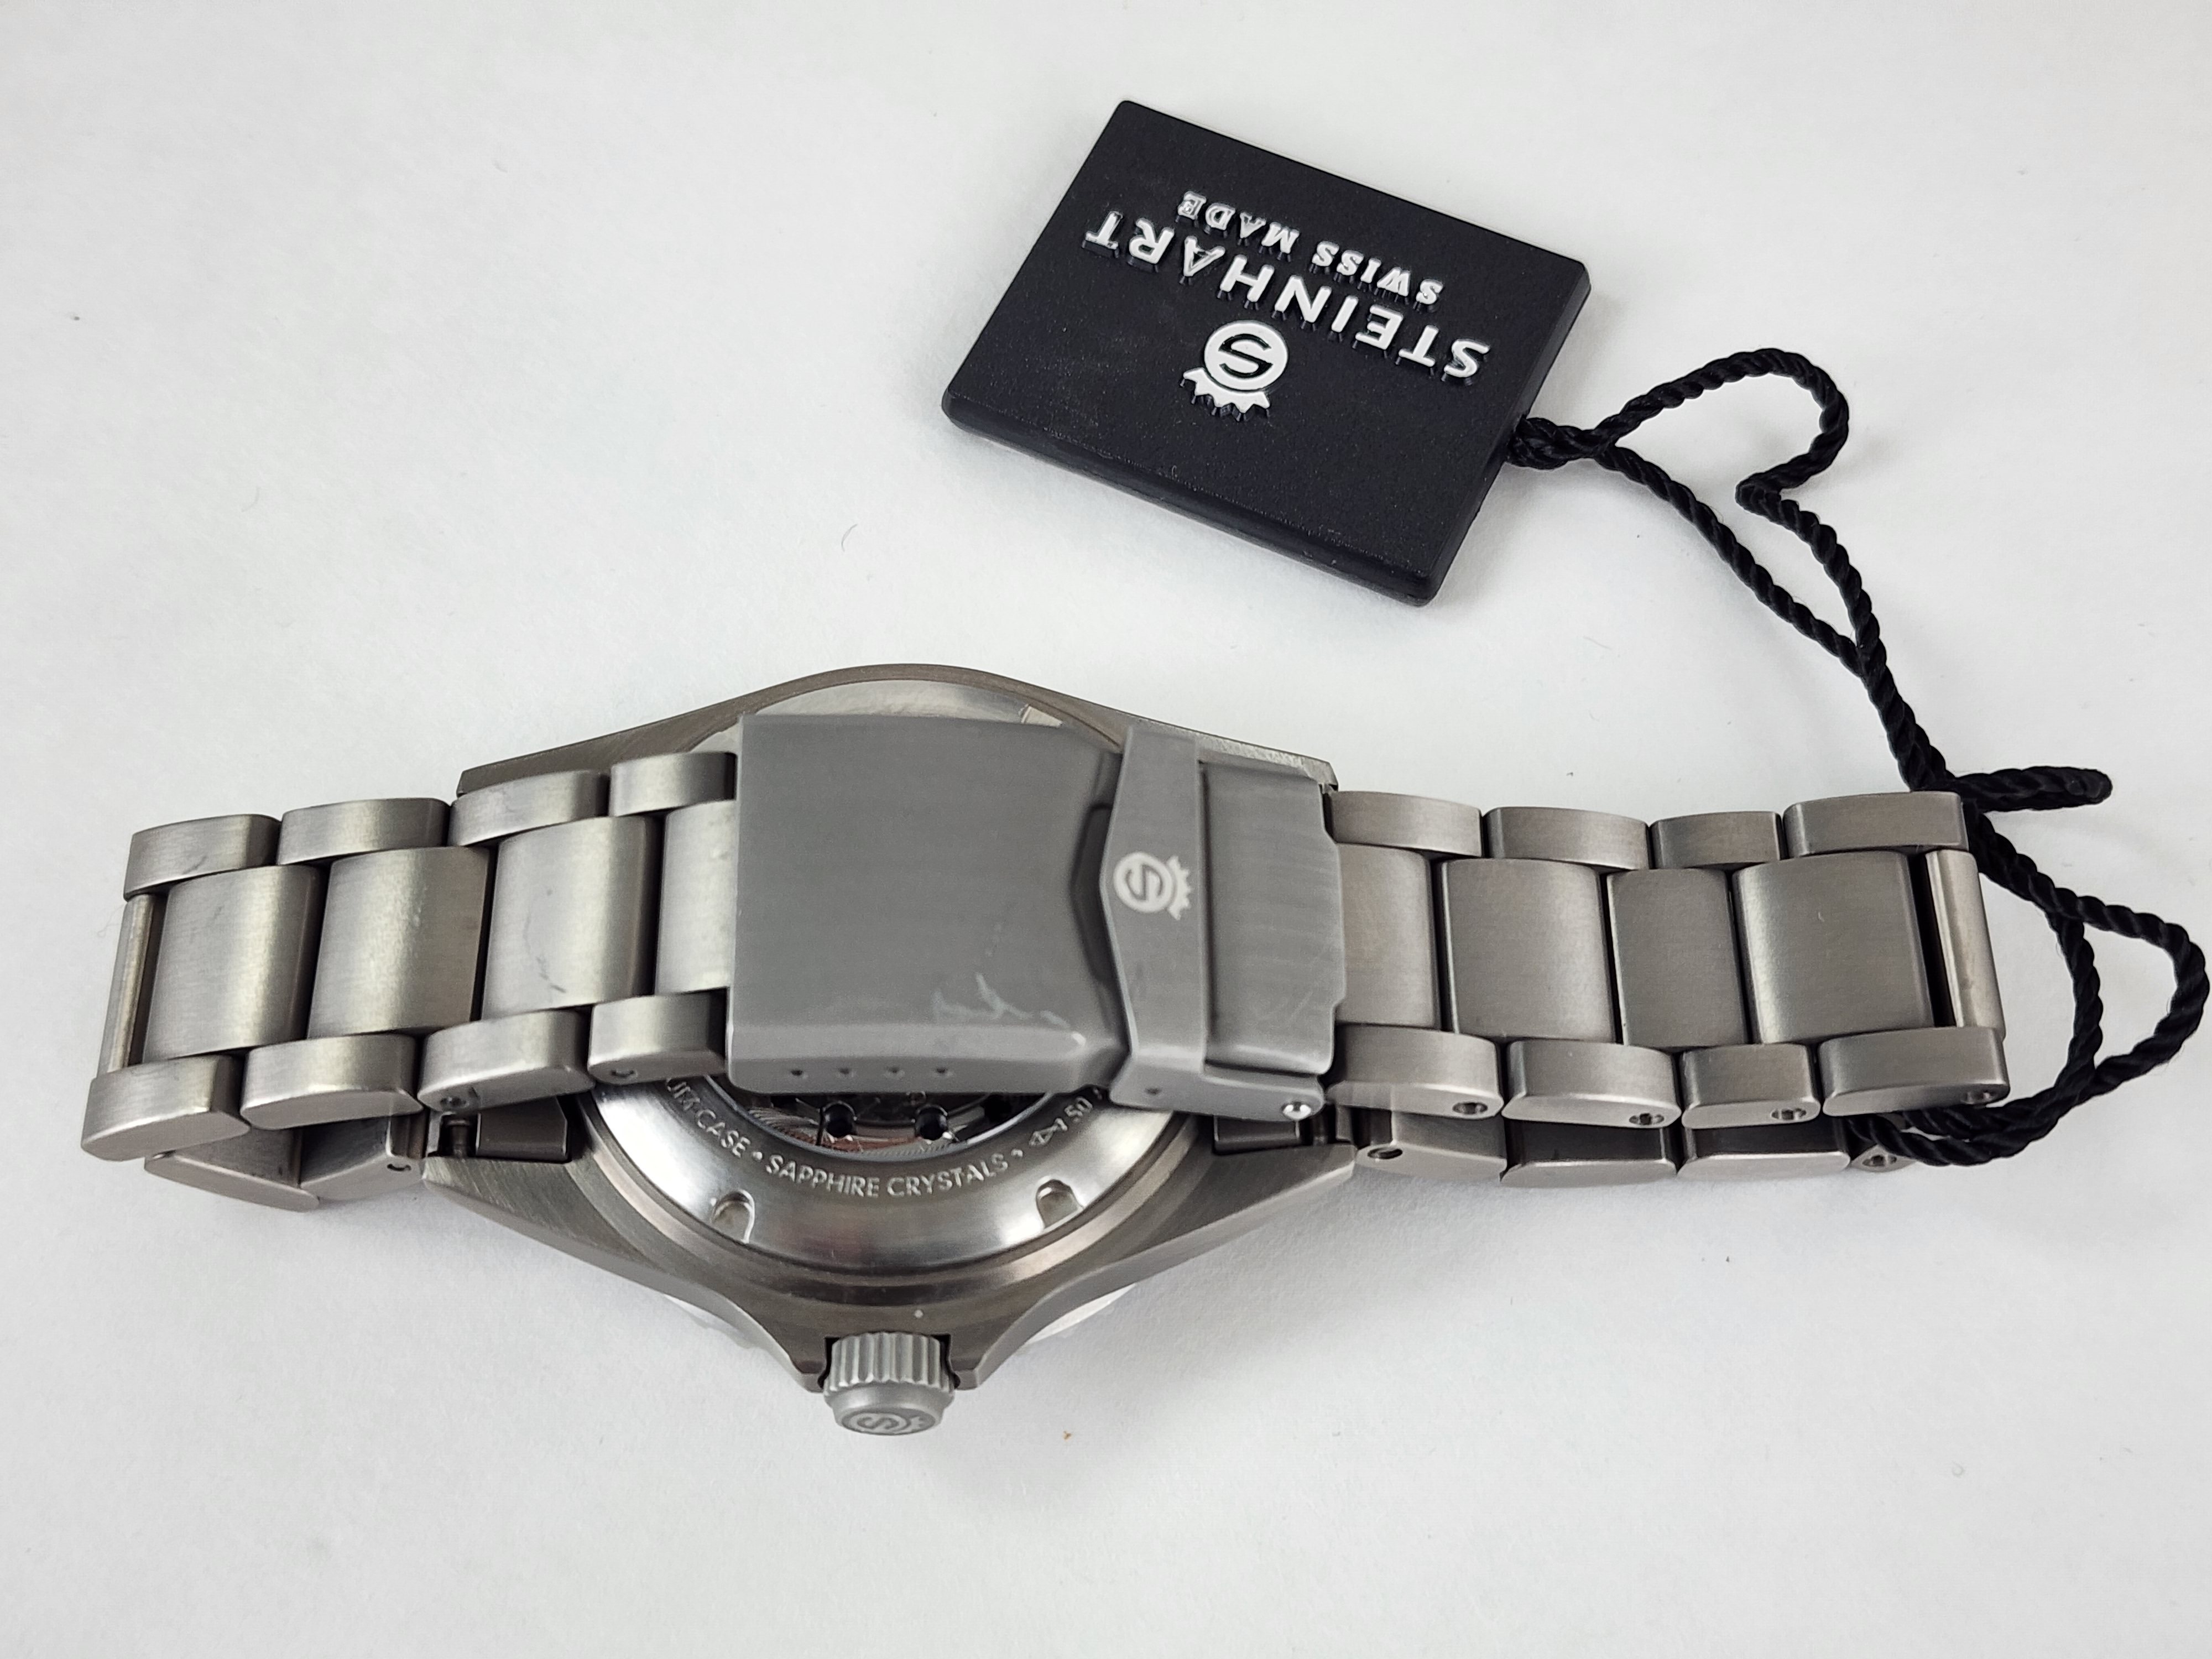 Steinhart Ocean One Titanium 500 GMT premium Ceramic Automatic Men's Watch 103-0662 Batman - Click Image to Close